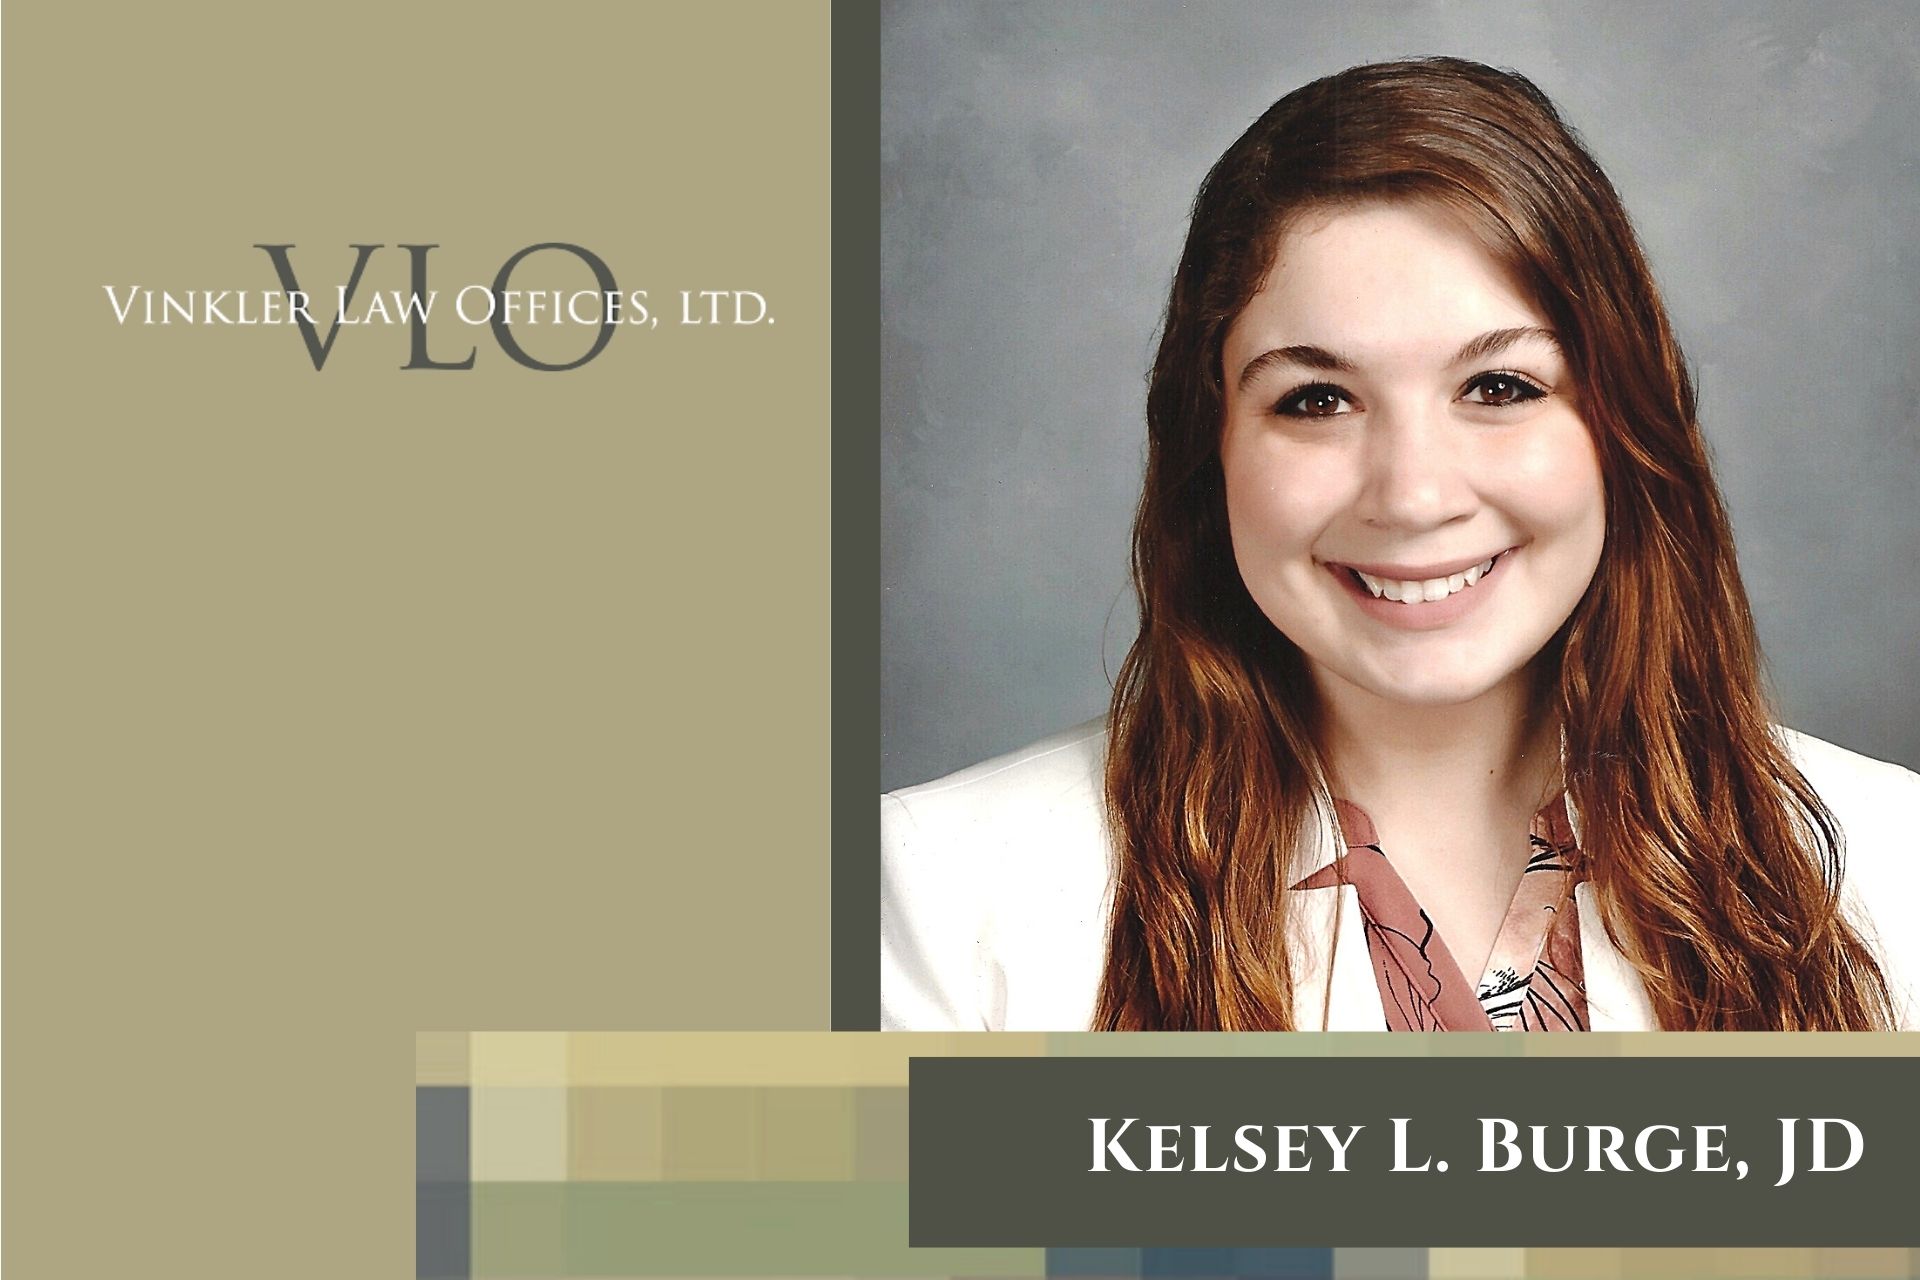 Vinkler Law Chicago hires Kelsey L Burge JD